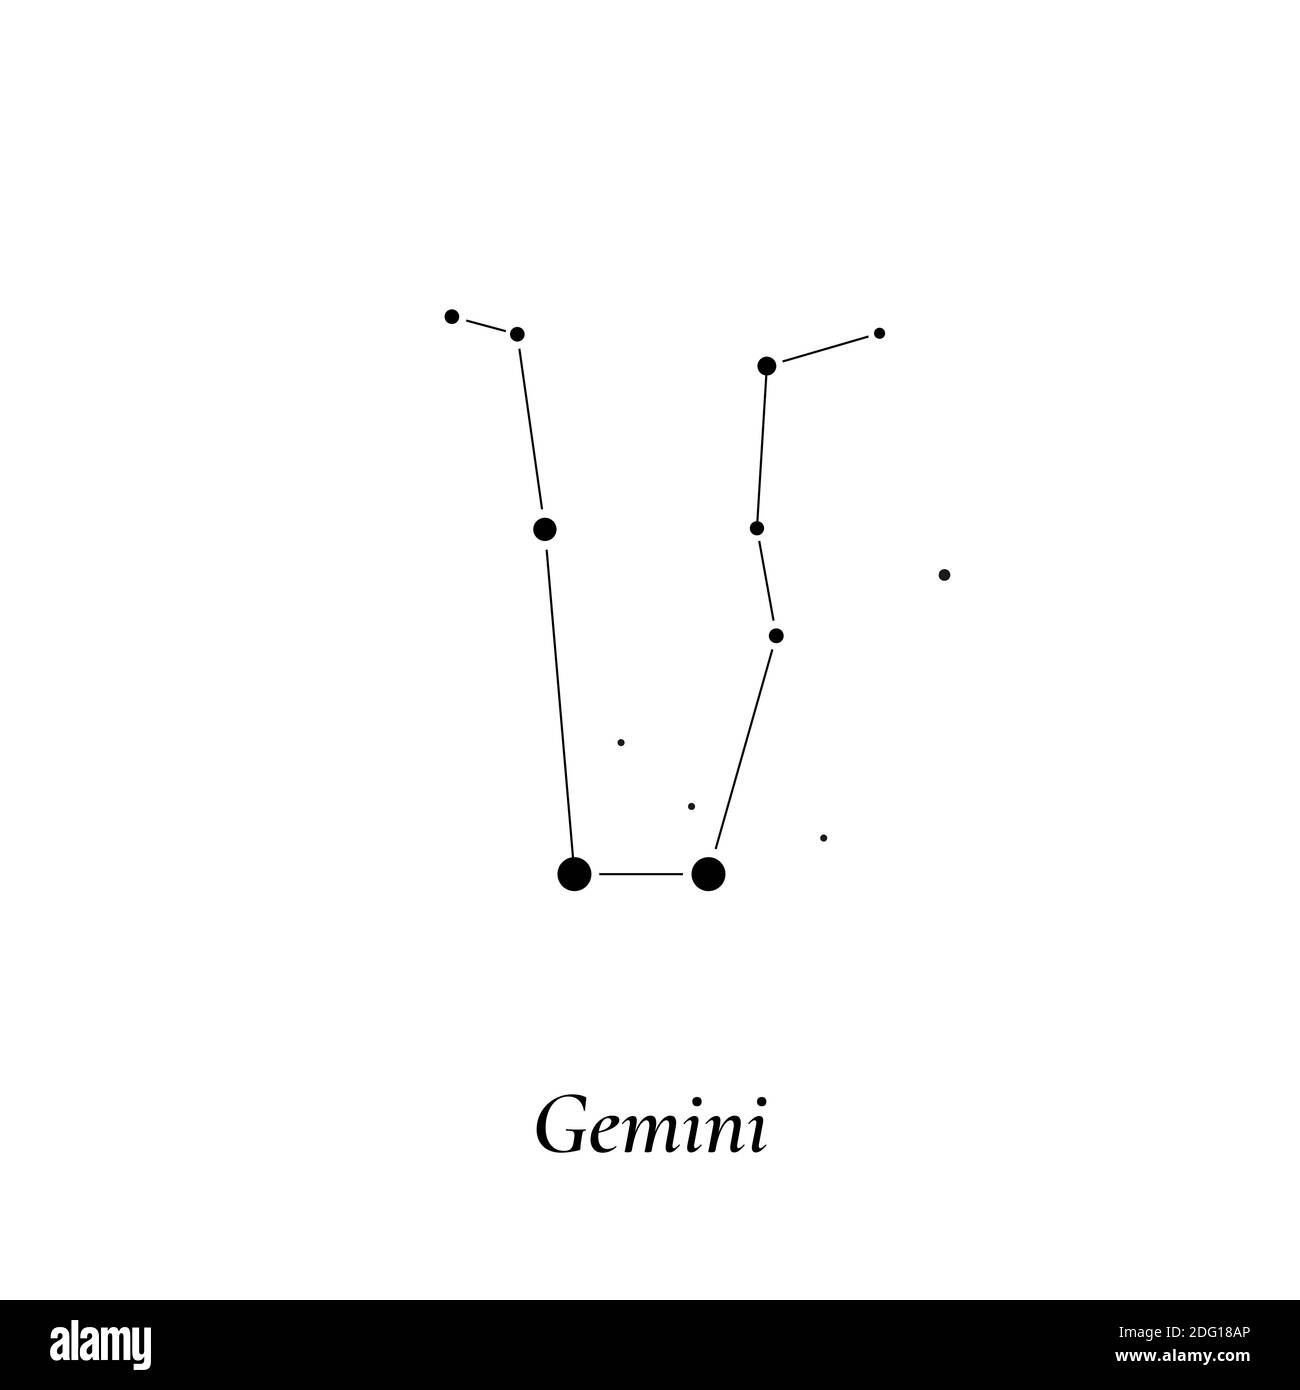 Segno Gemini. Mappa delle stelle della costellazione zodiacale. Illustrazione vettoriale Illustrazione Vettoriale